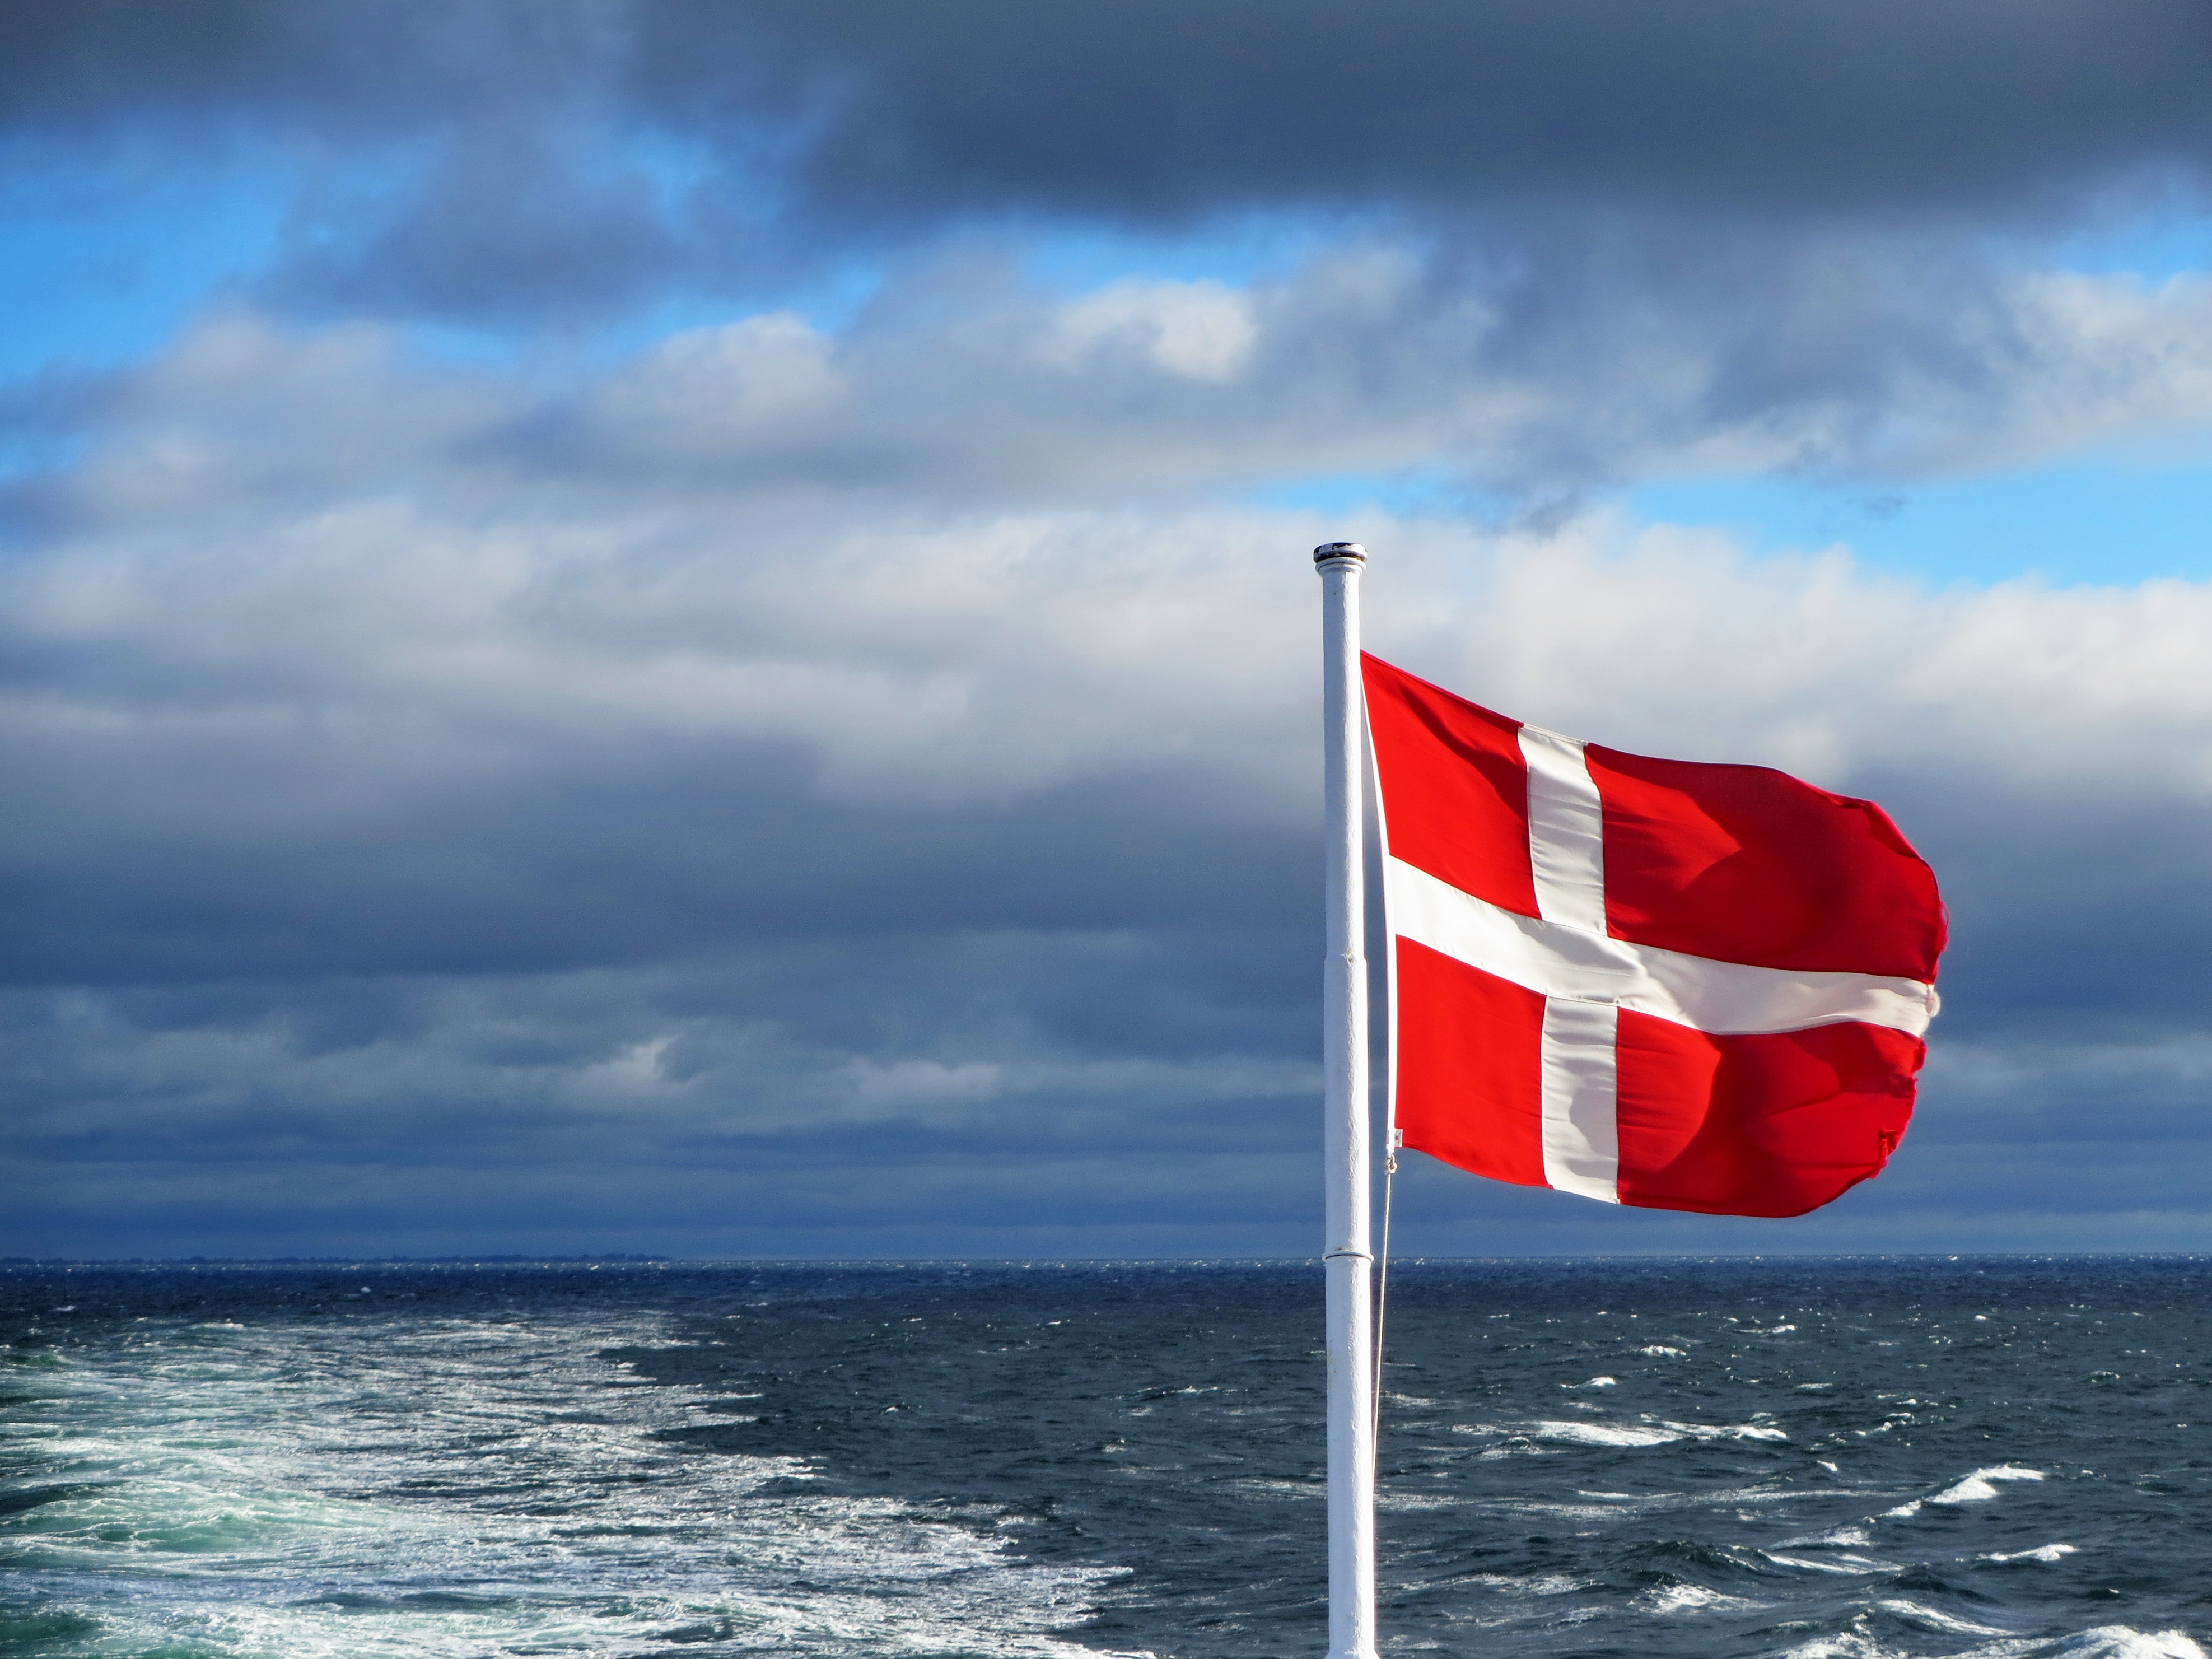 Dänische Flagge bei einer Fähre mit dem Meerblick